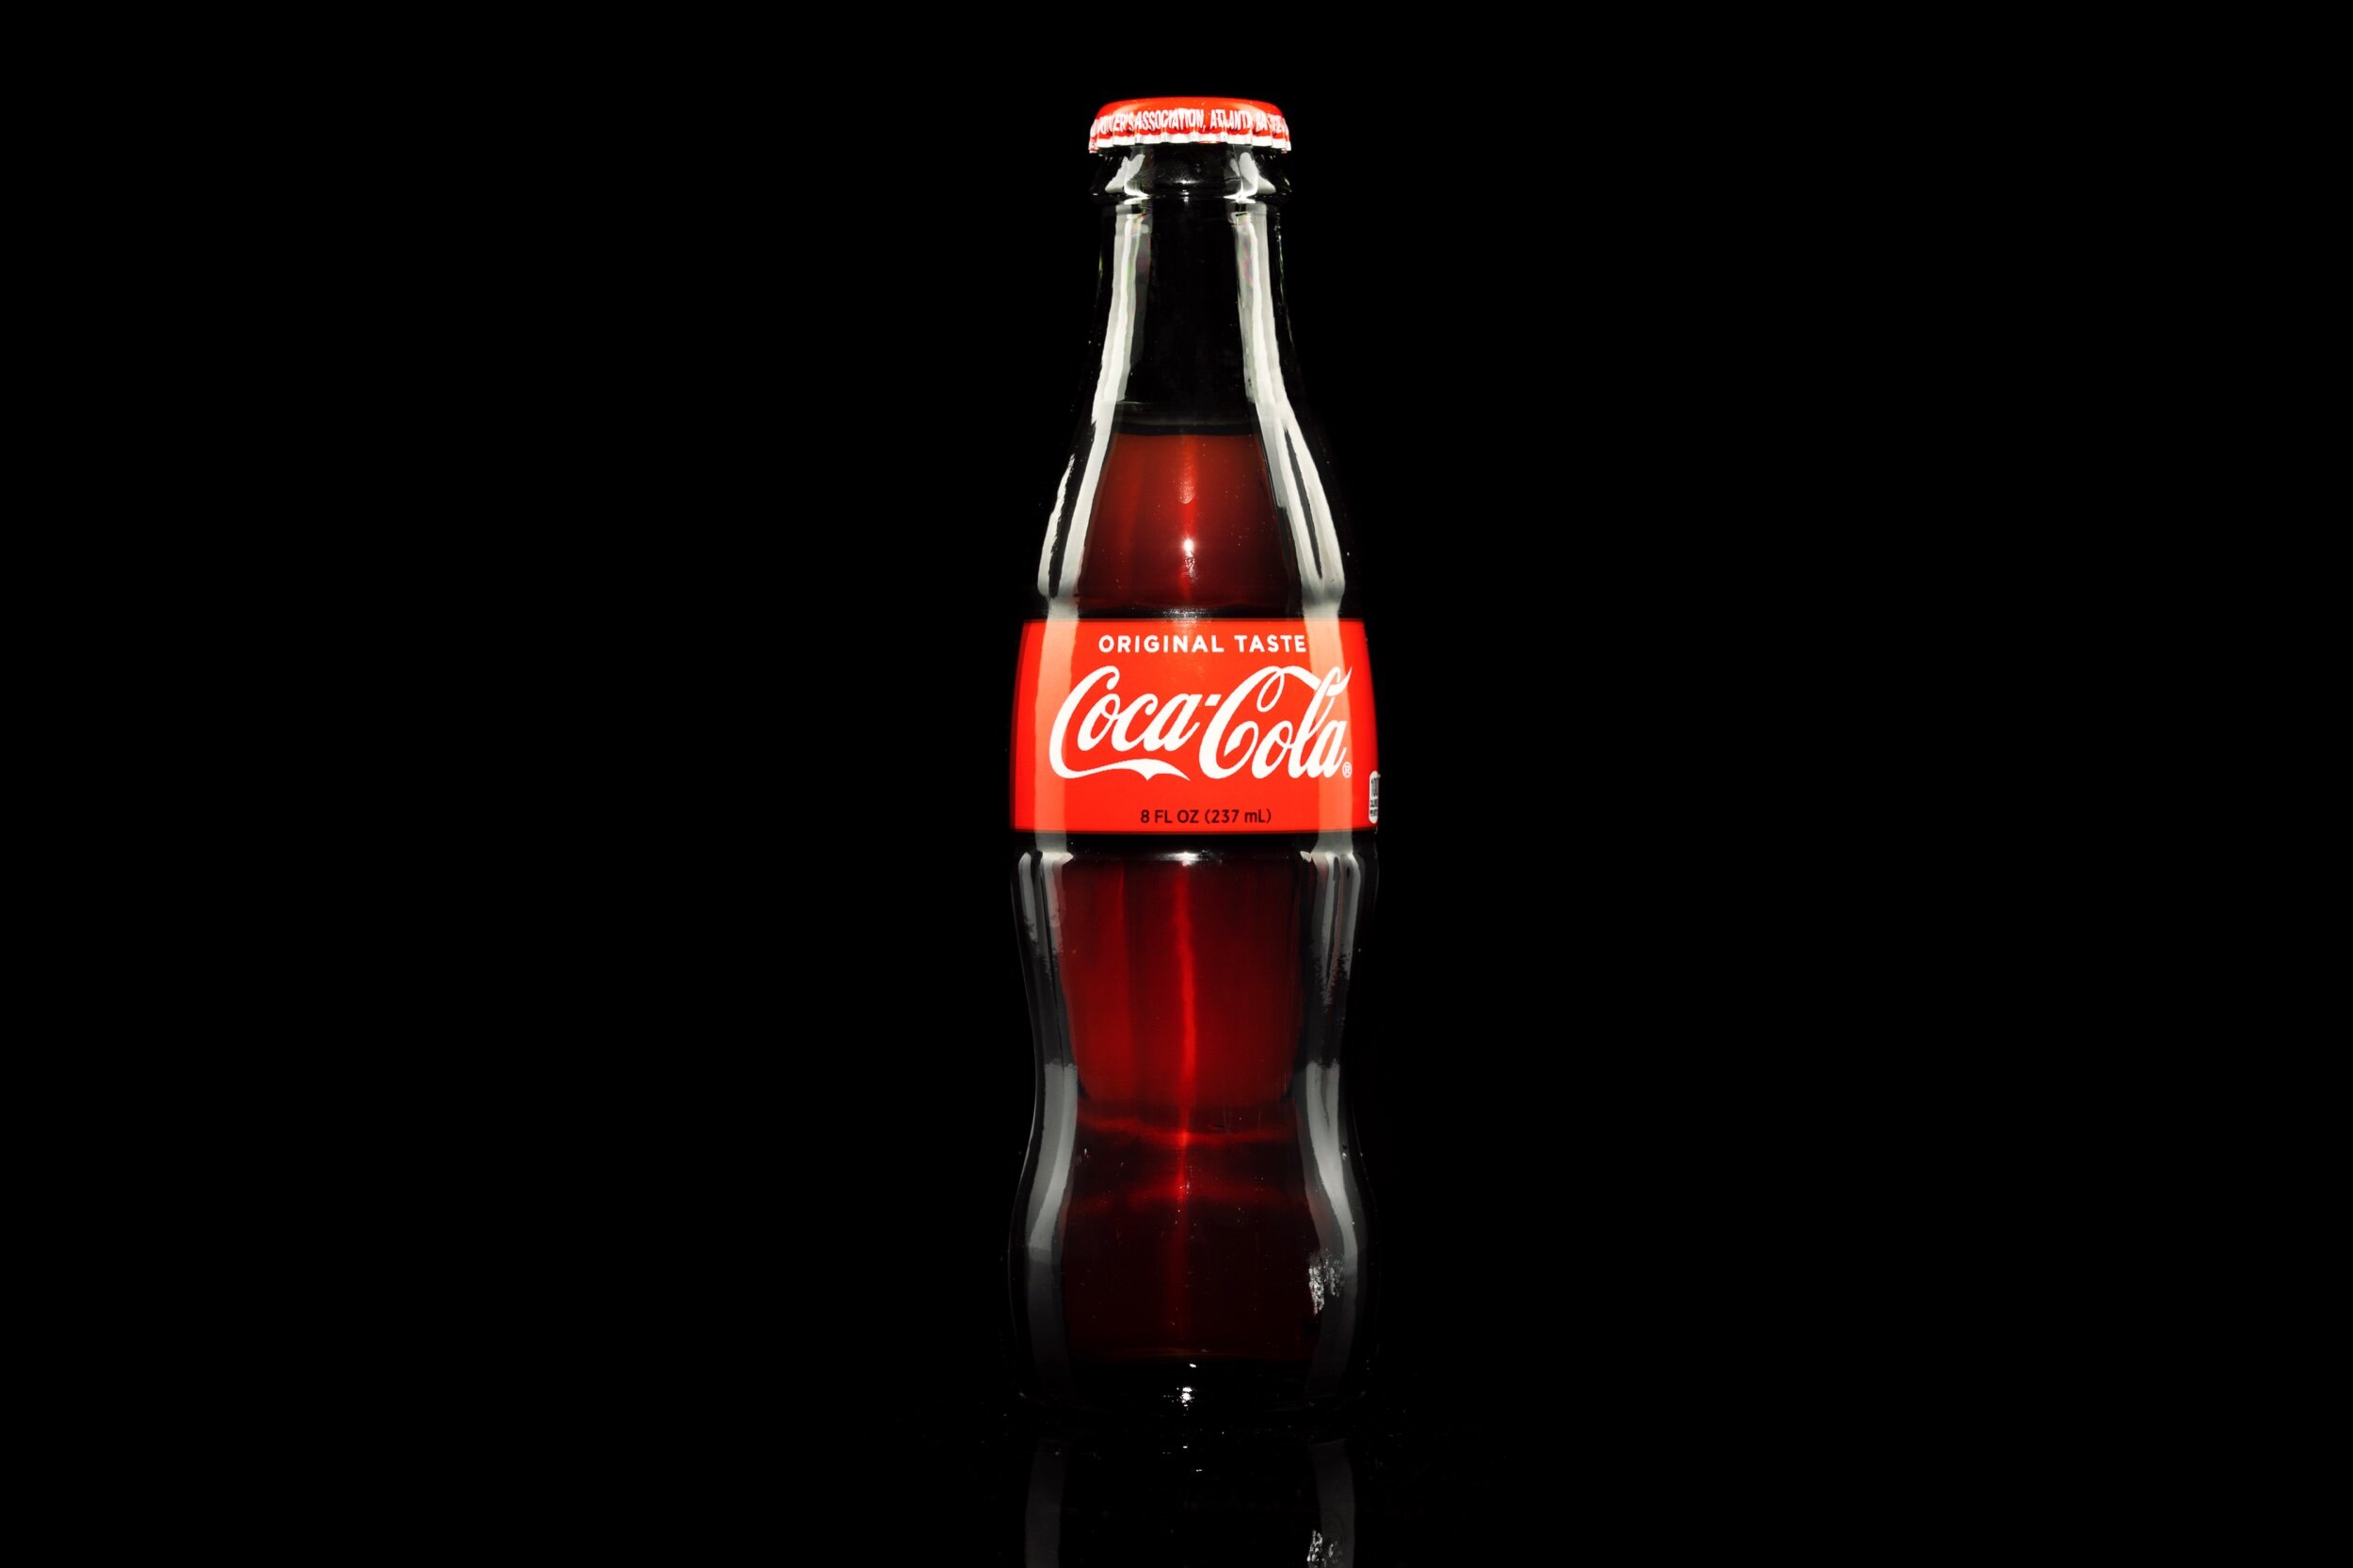 CocaCola.jpeg